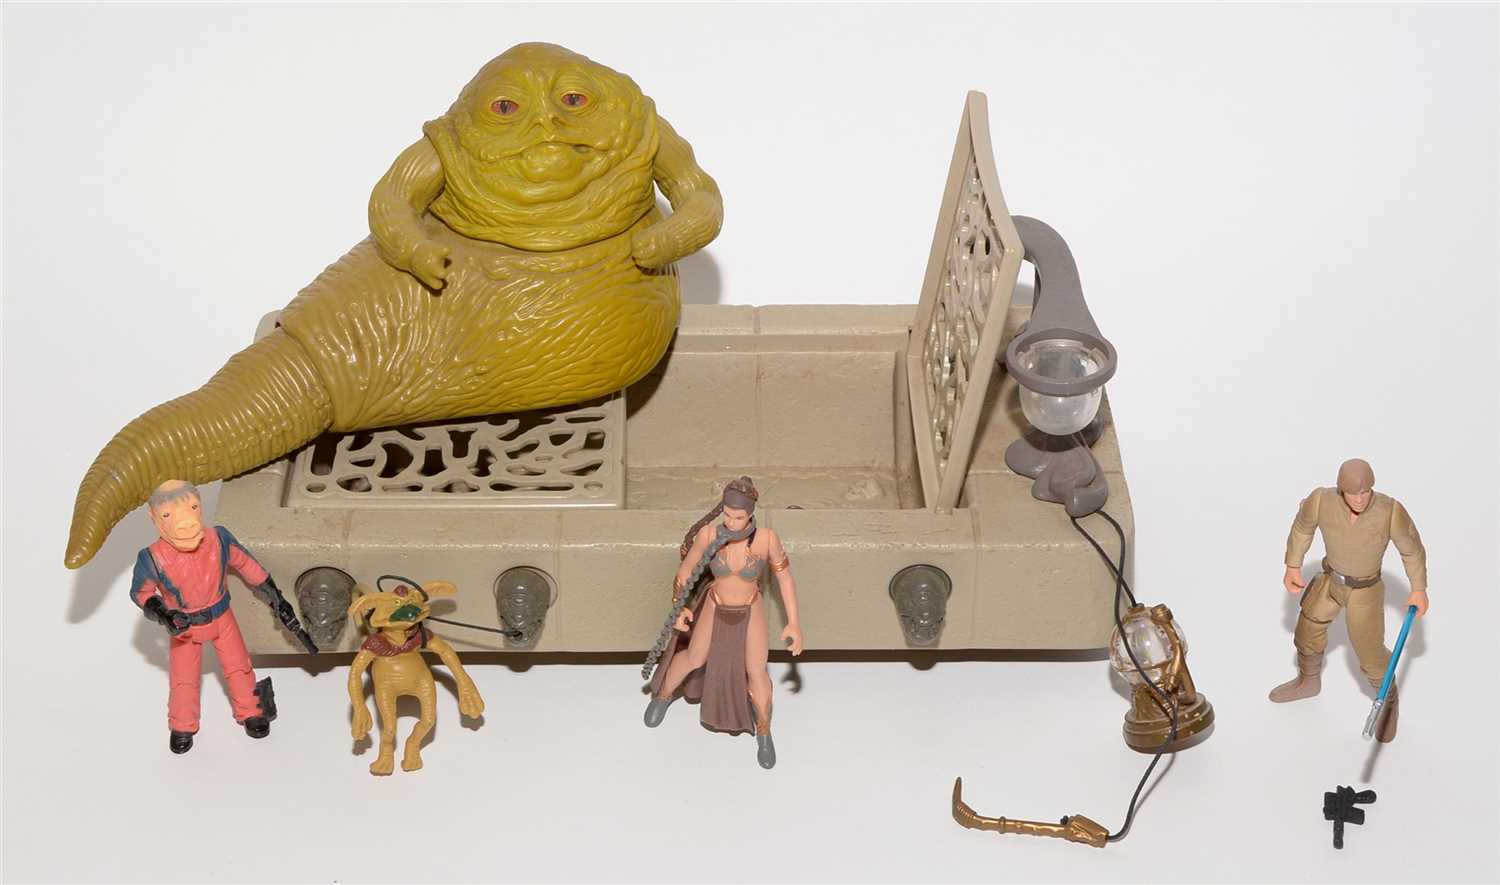 Lot 1213 - Star Wars figurines.